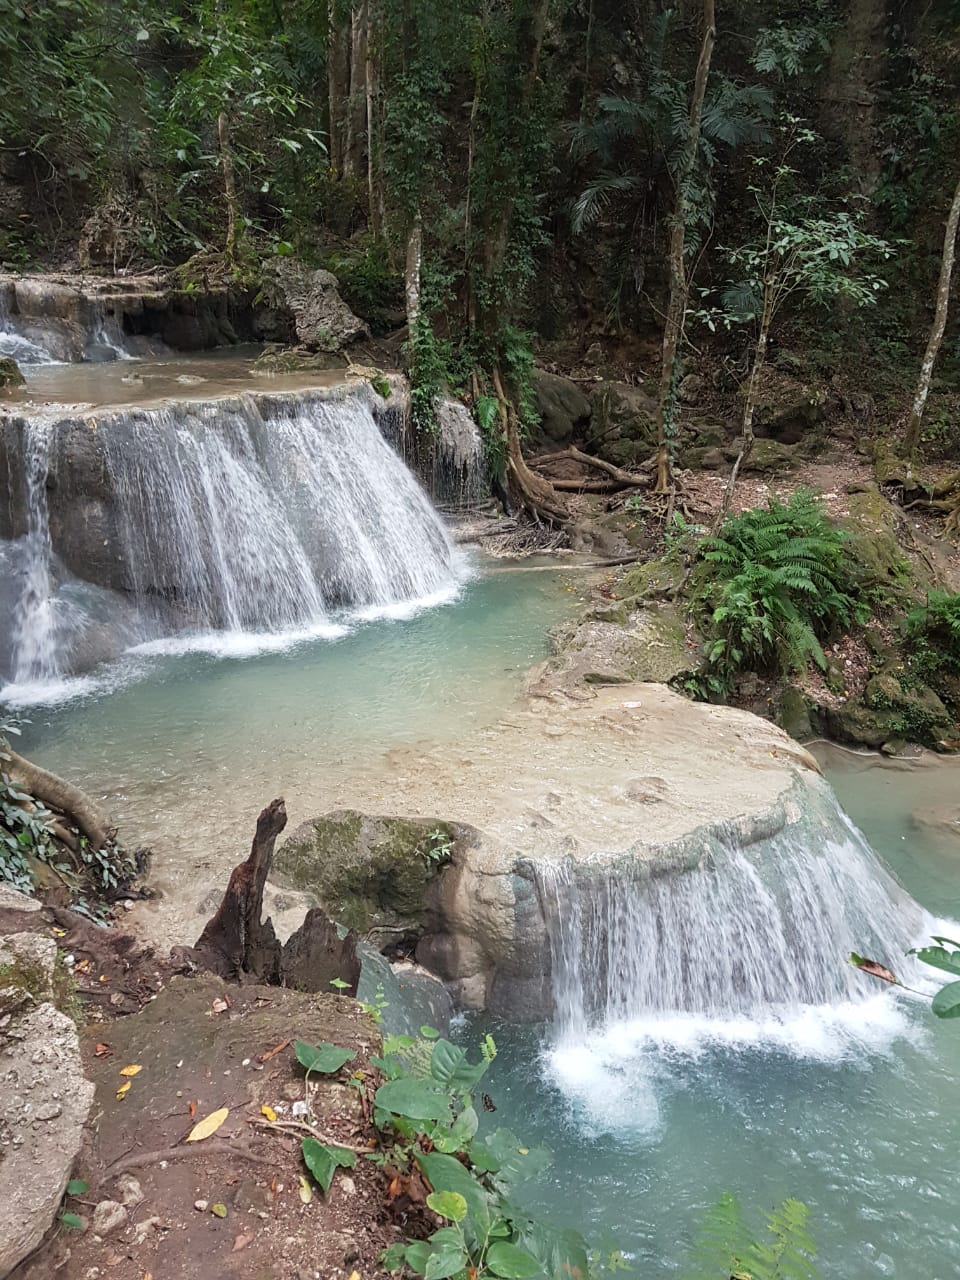 Air Terjun Oehala waterfall in West Timor